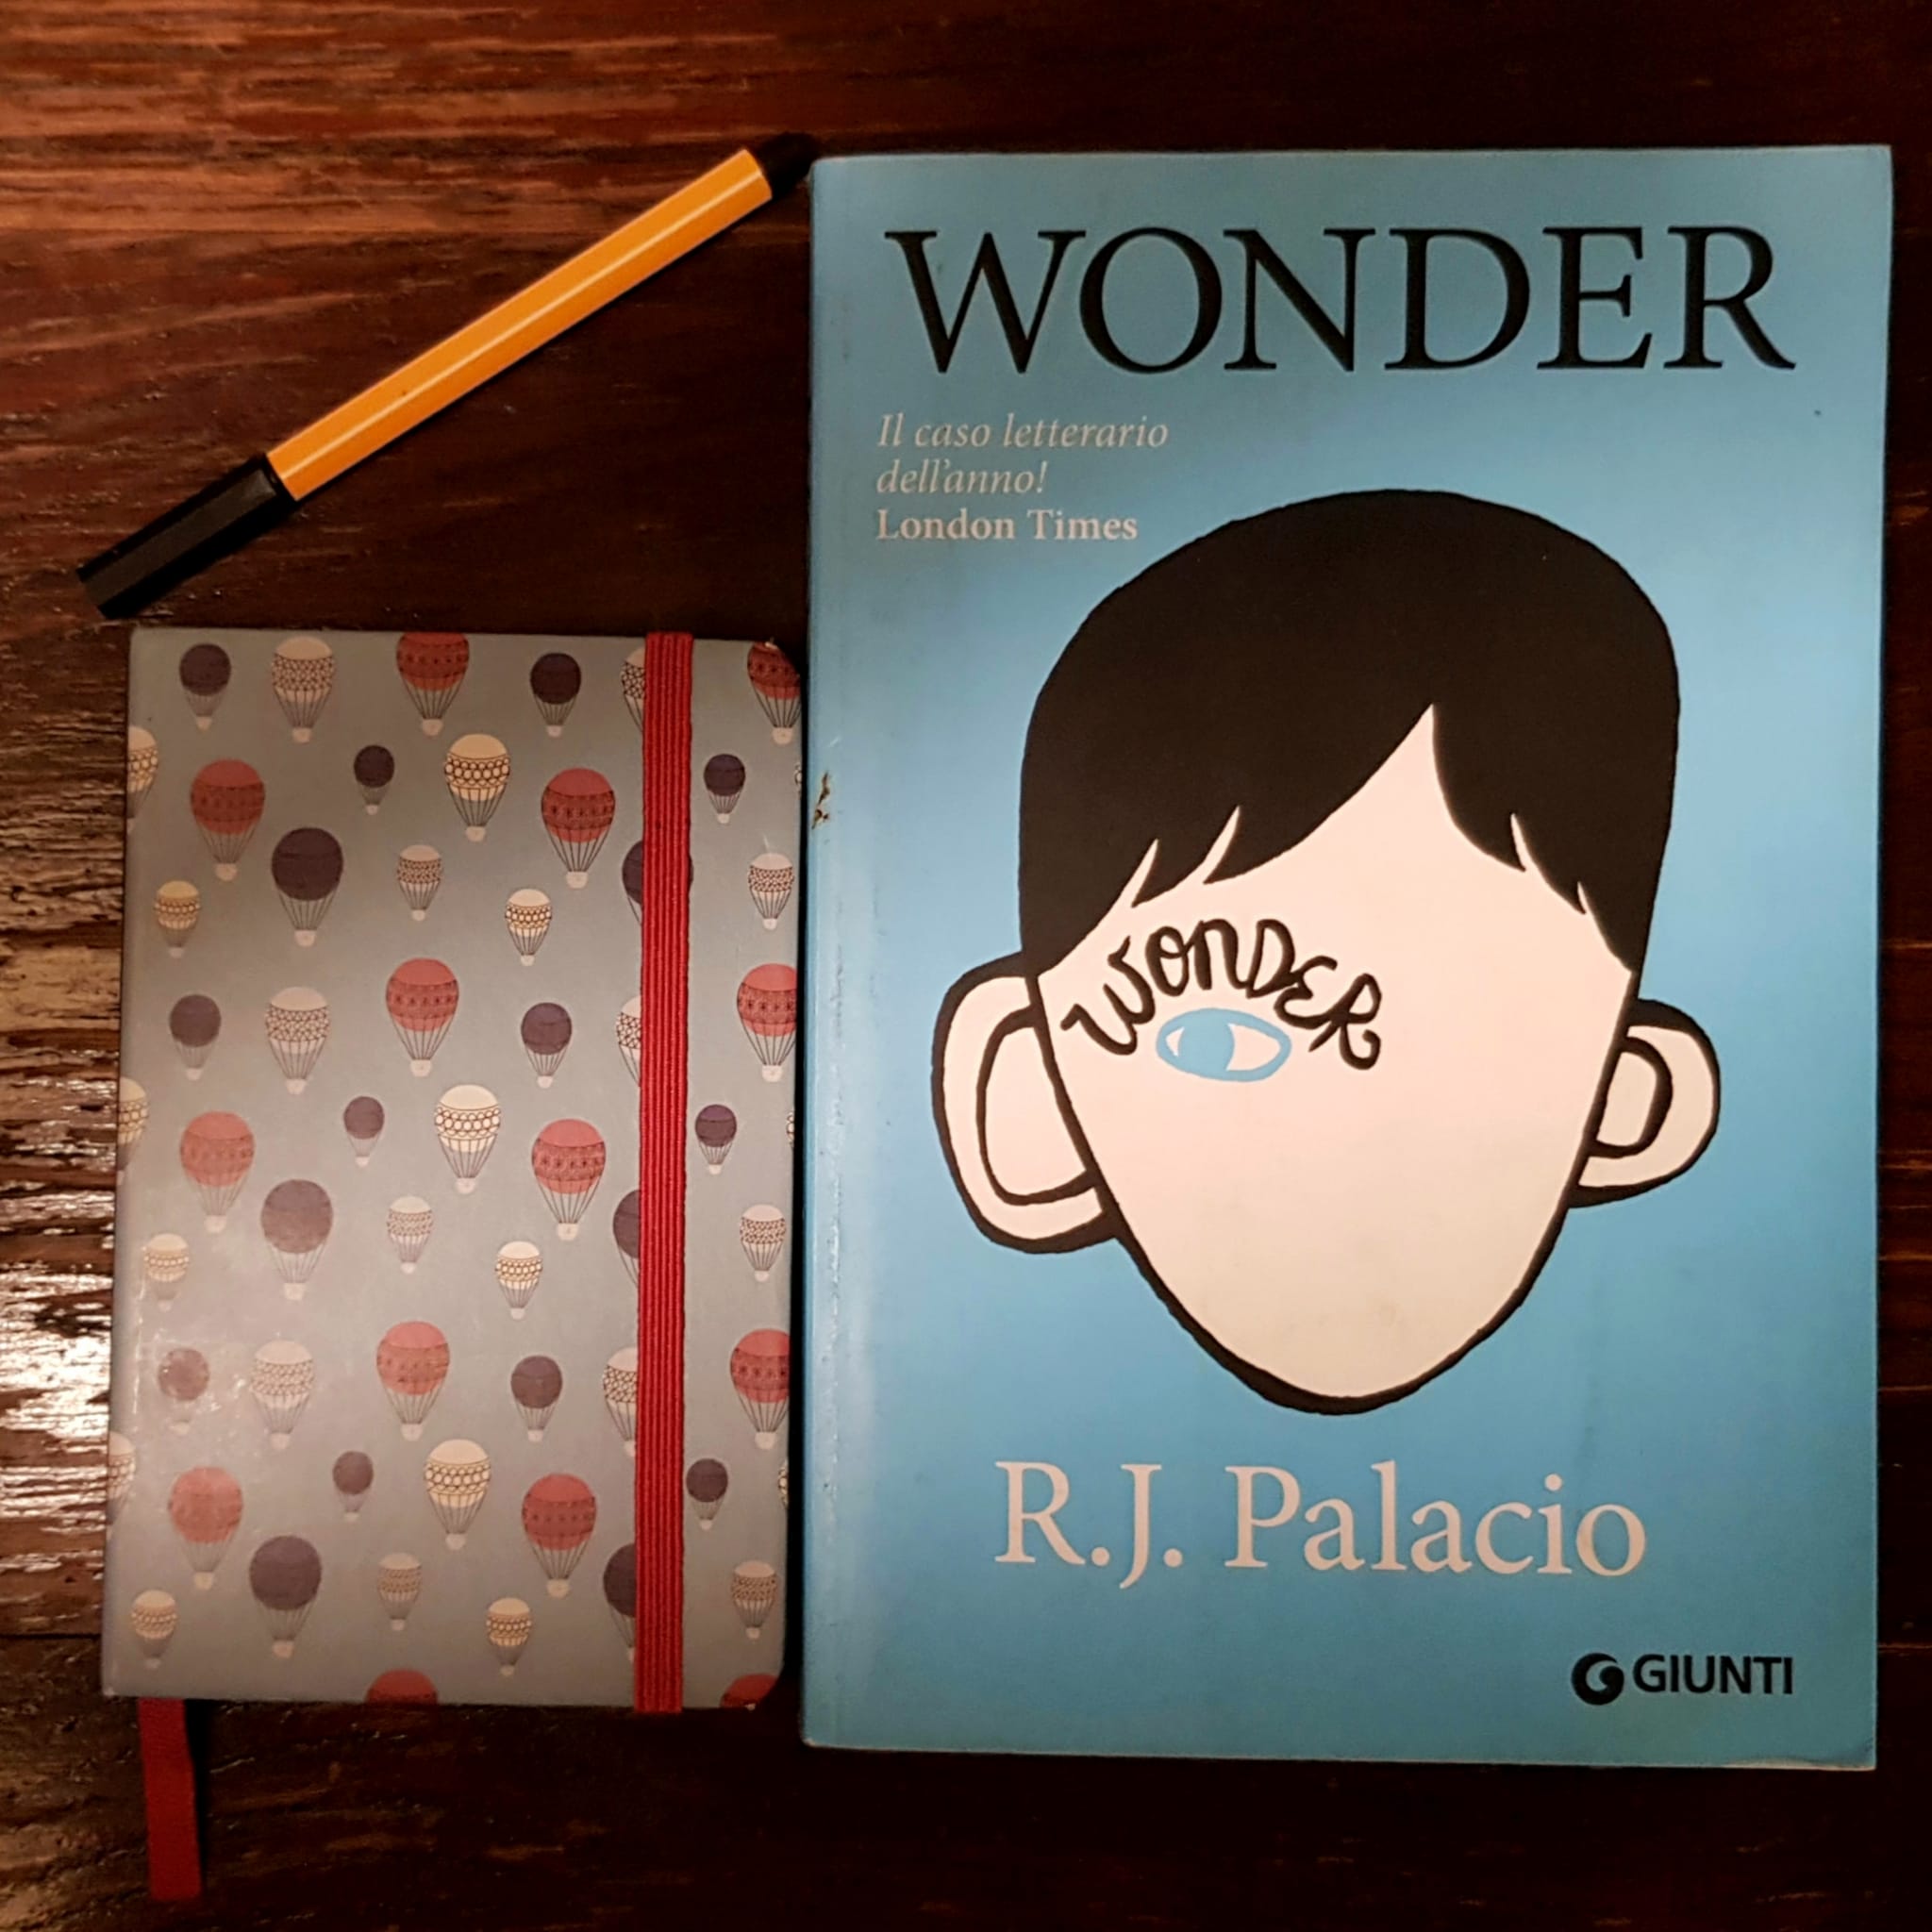 Leggere a scuola - Wonder (Palacio 2013) - Associazione Tokalon